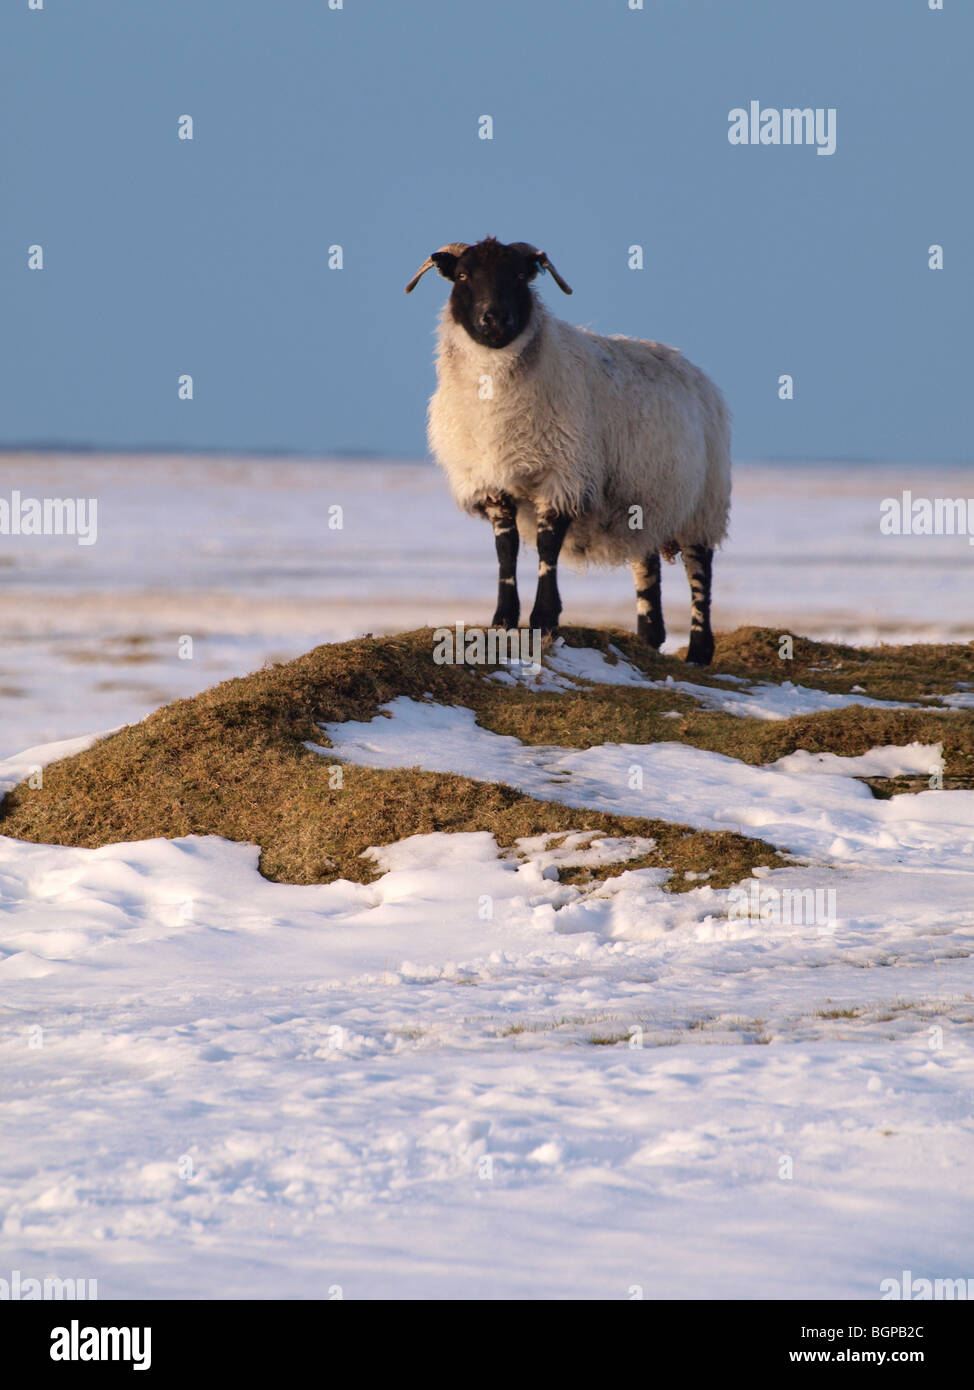 Schaf stehend auf einem Flecken des Grases im Schnee bedeckt Landschaft, Cornwall, UK Stockfoto